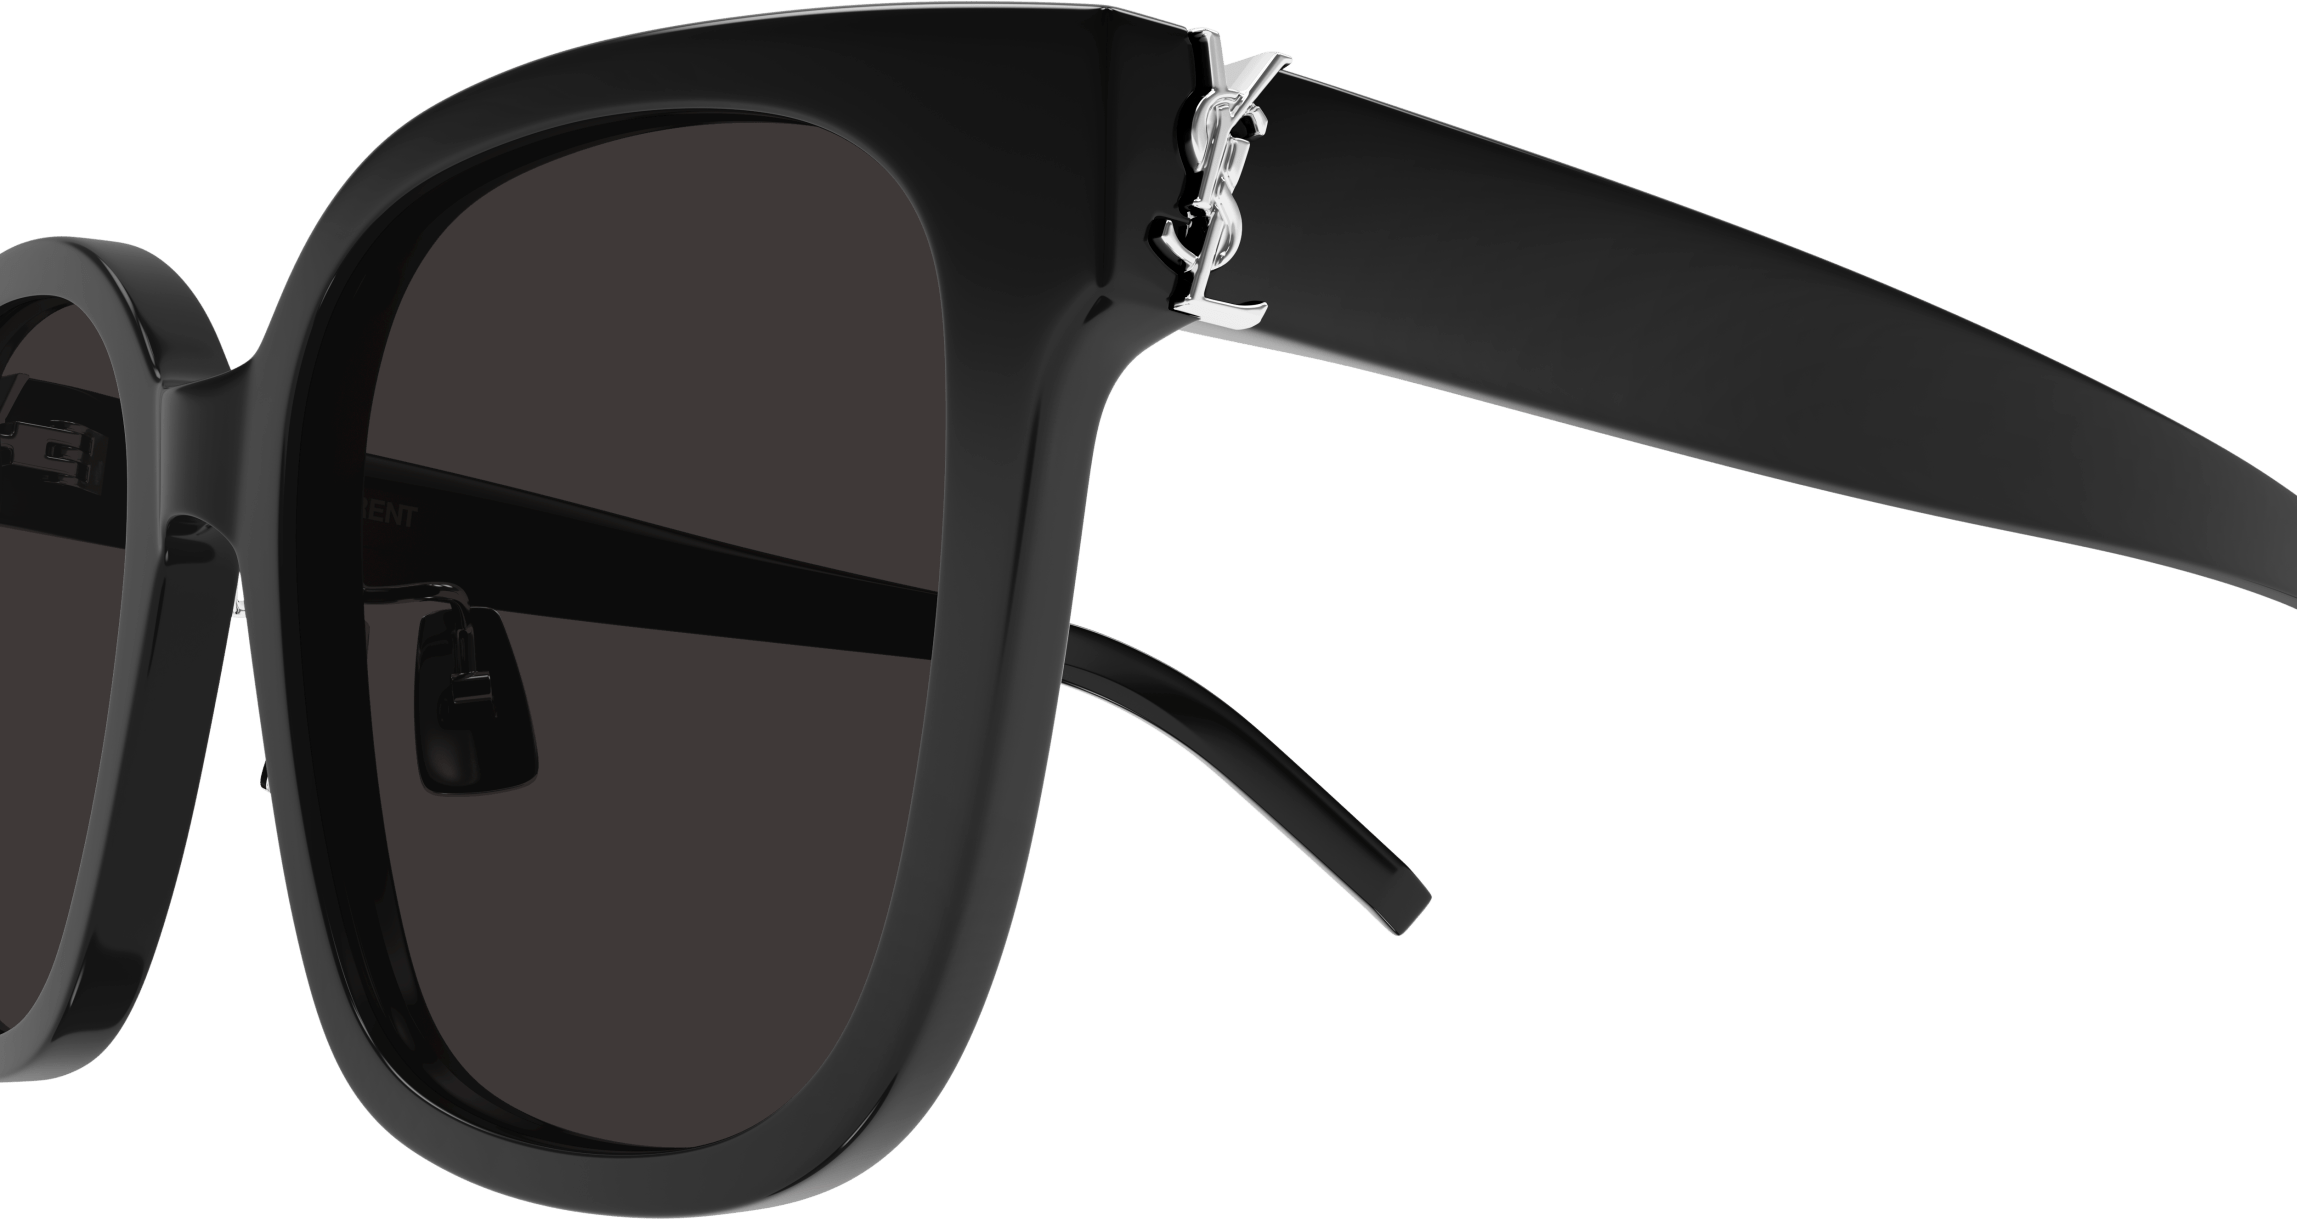 Saint Laurent SL M105/F Sunglasses